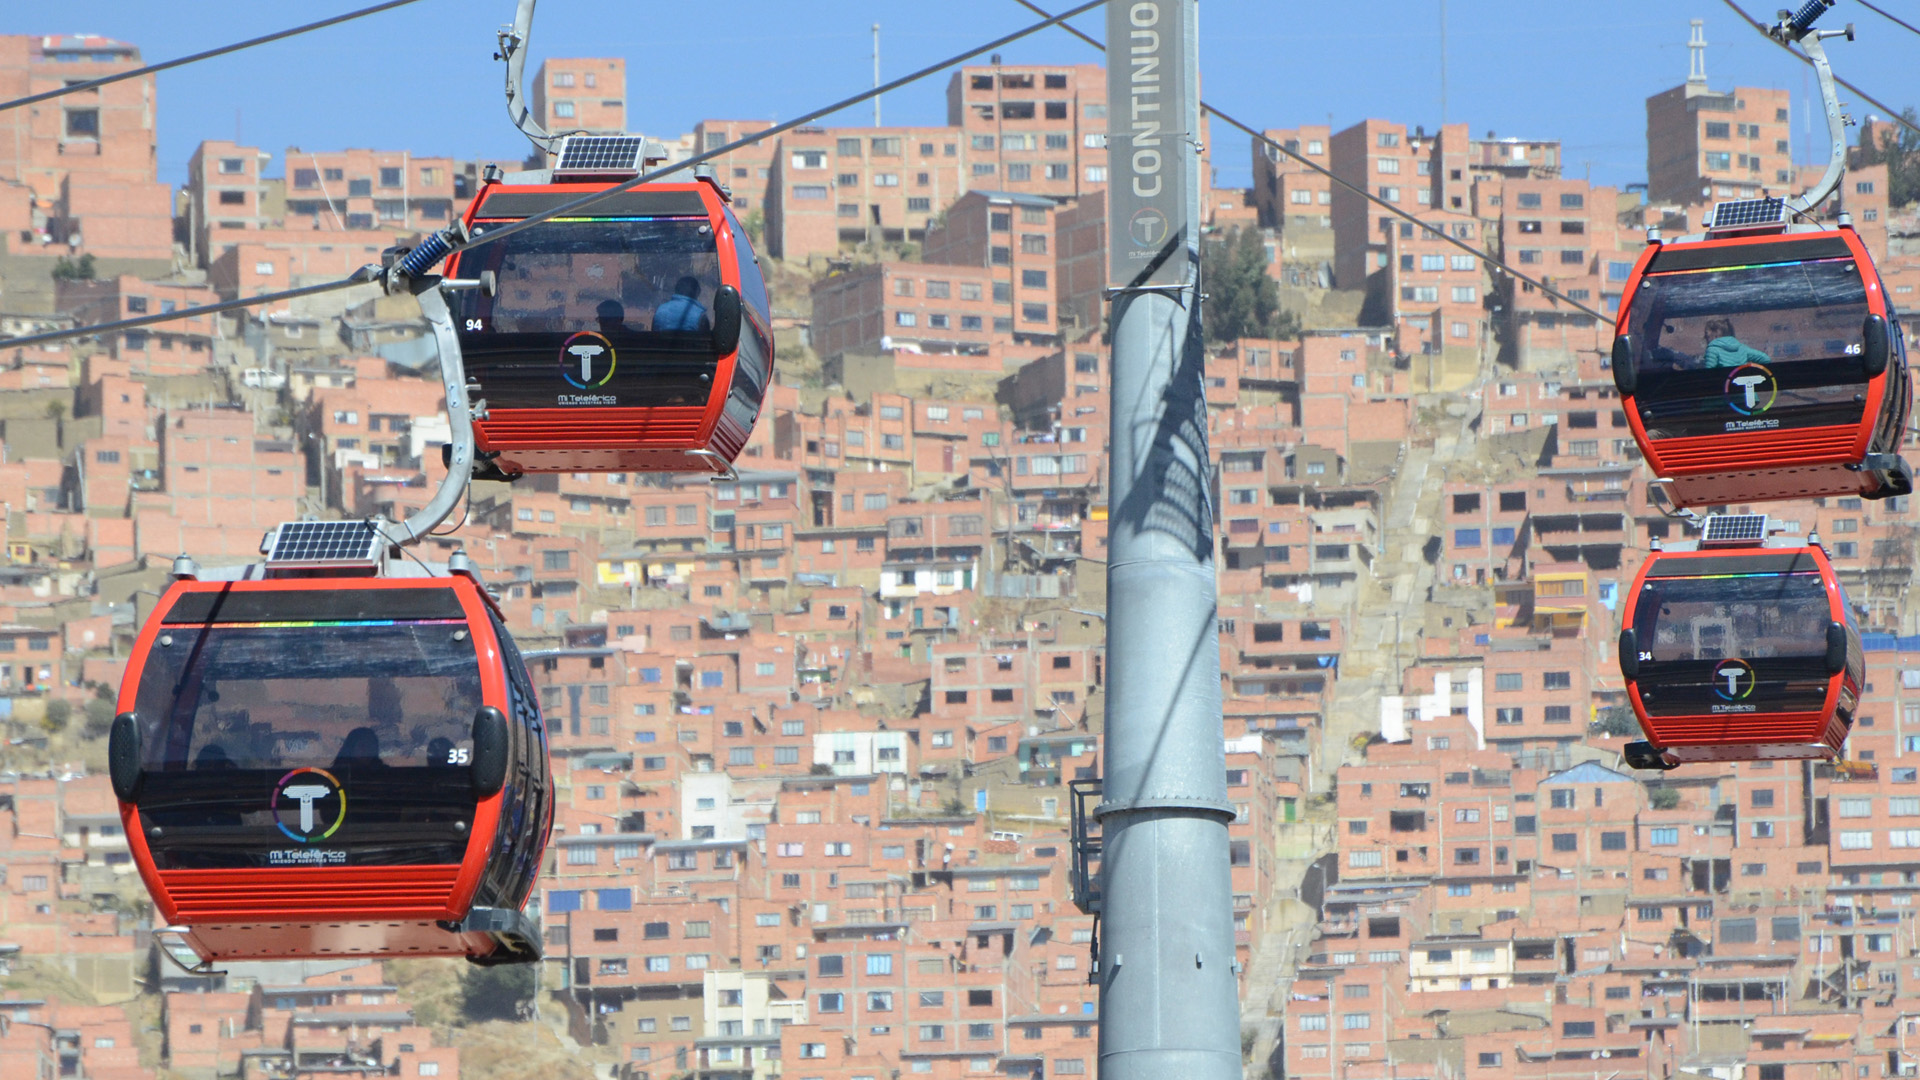 Seilbahn als Nahverkehrsmittel in La Paz | picture alliance/dpa